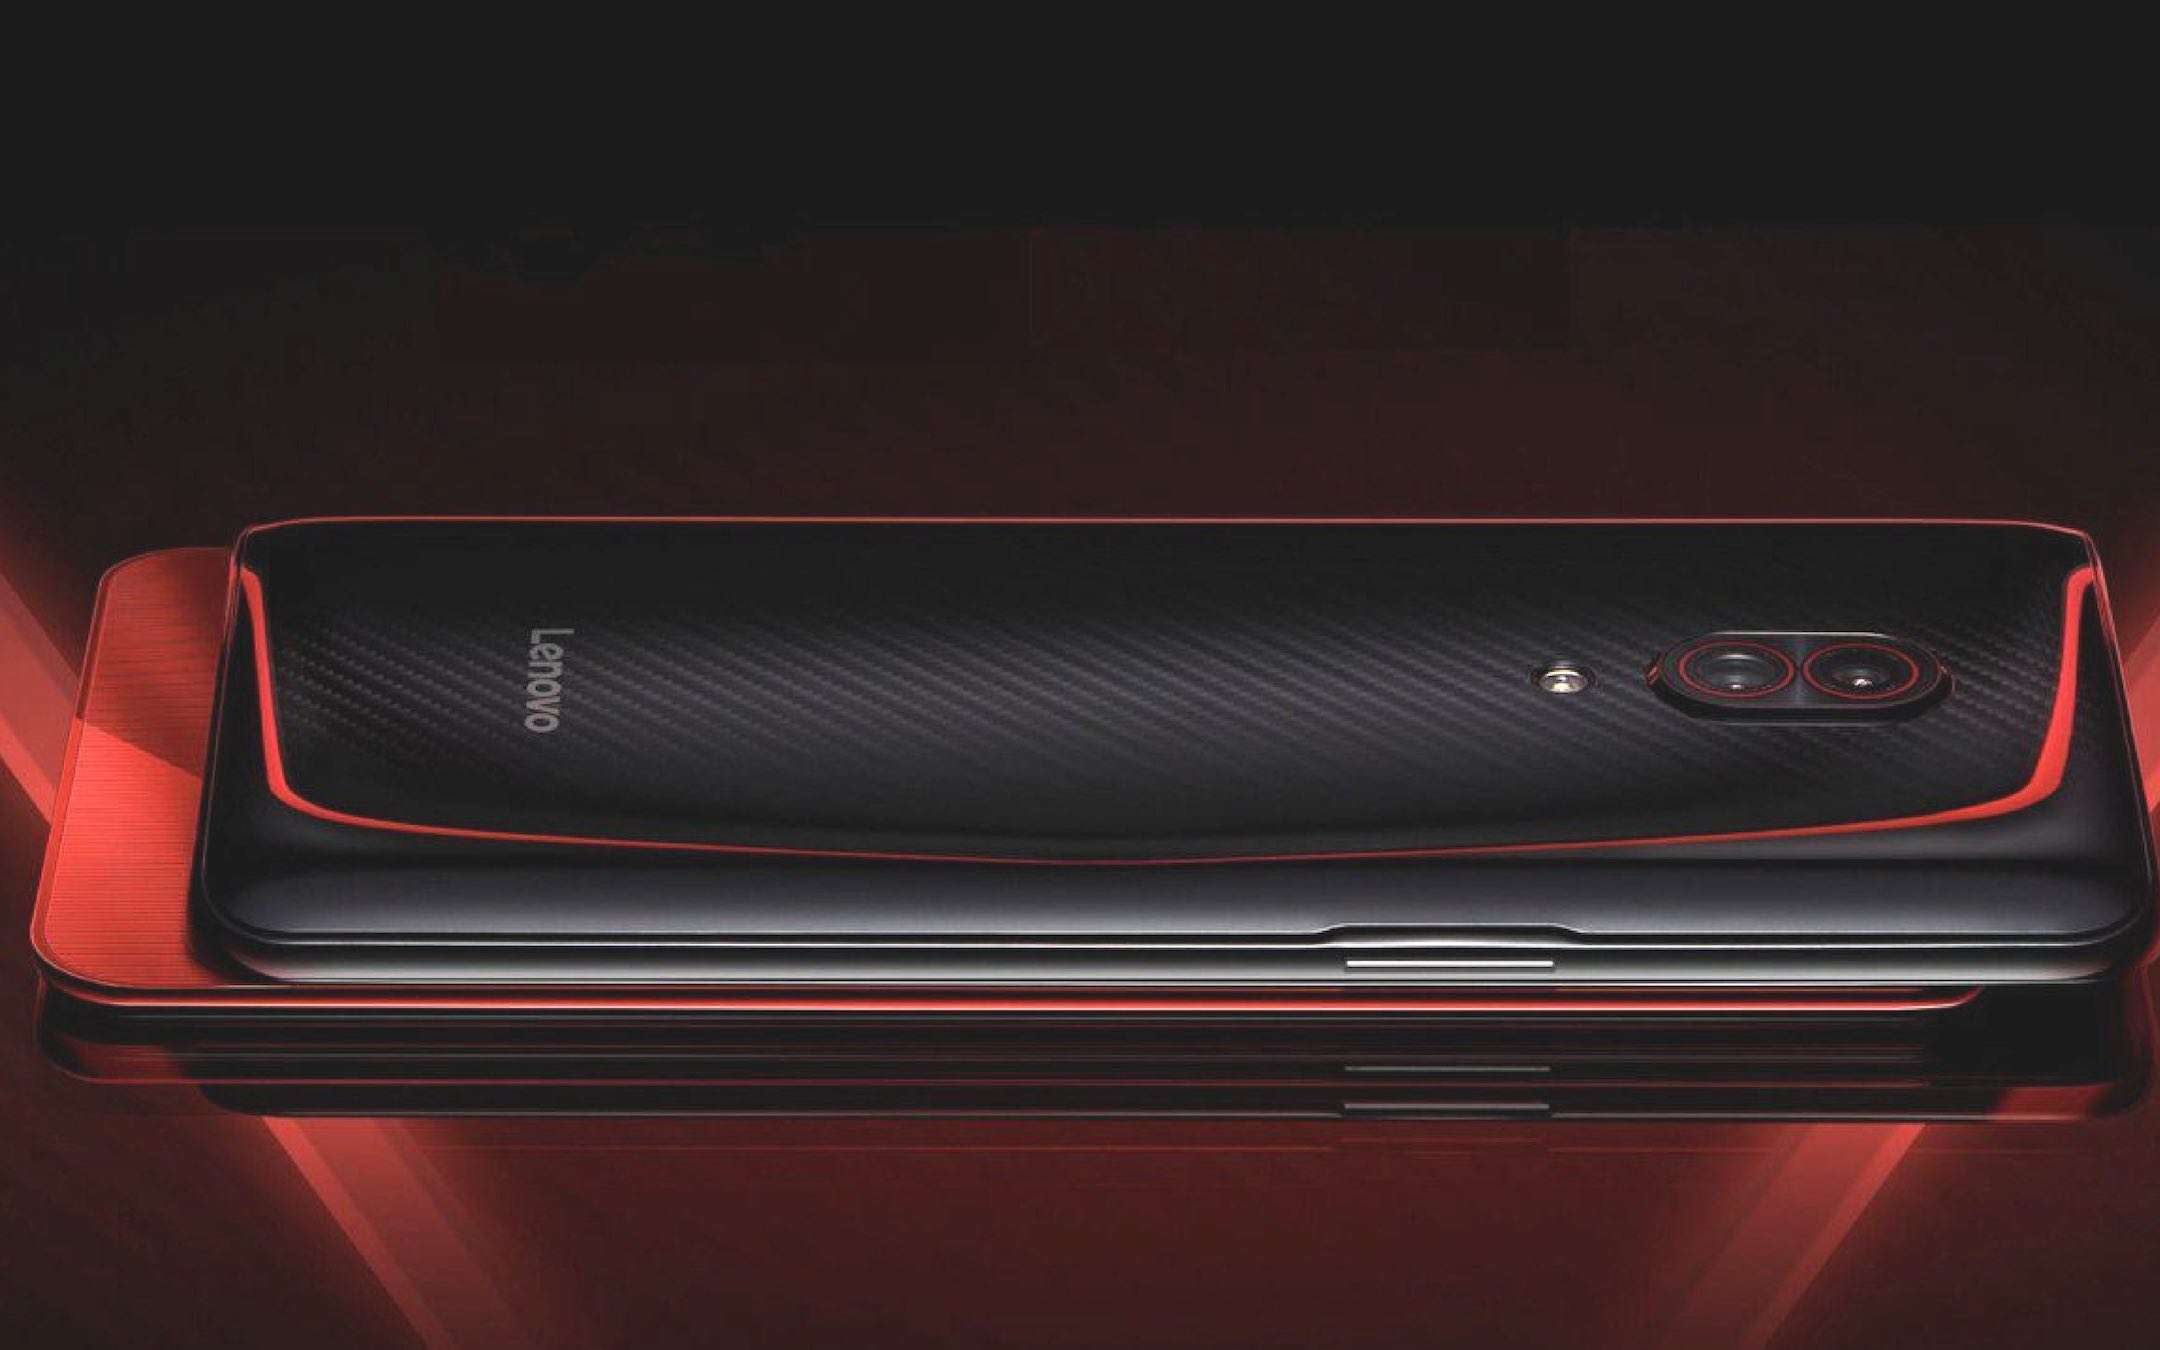 Lenovo Z5 Pro GT ufficiale: Snap 855 e 12GB di RAM